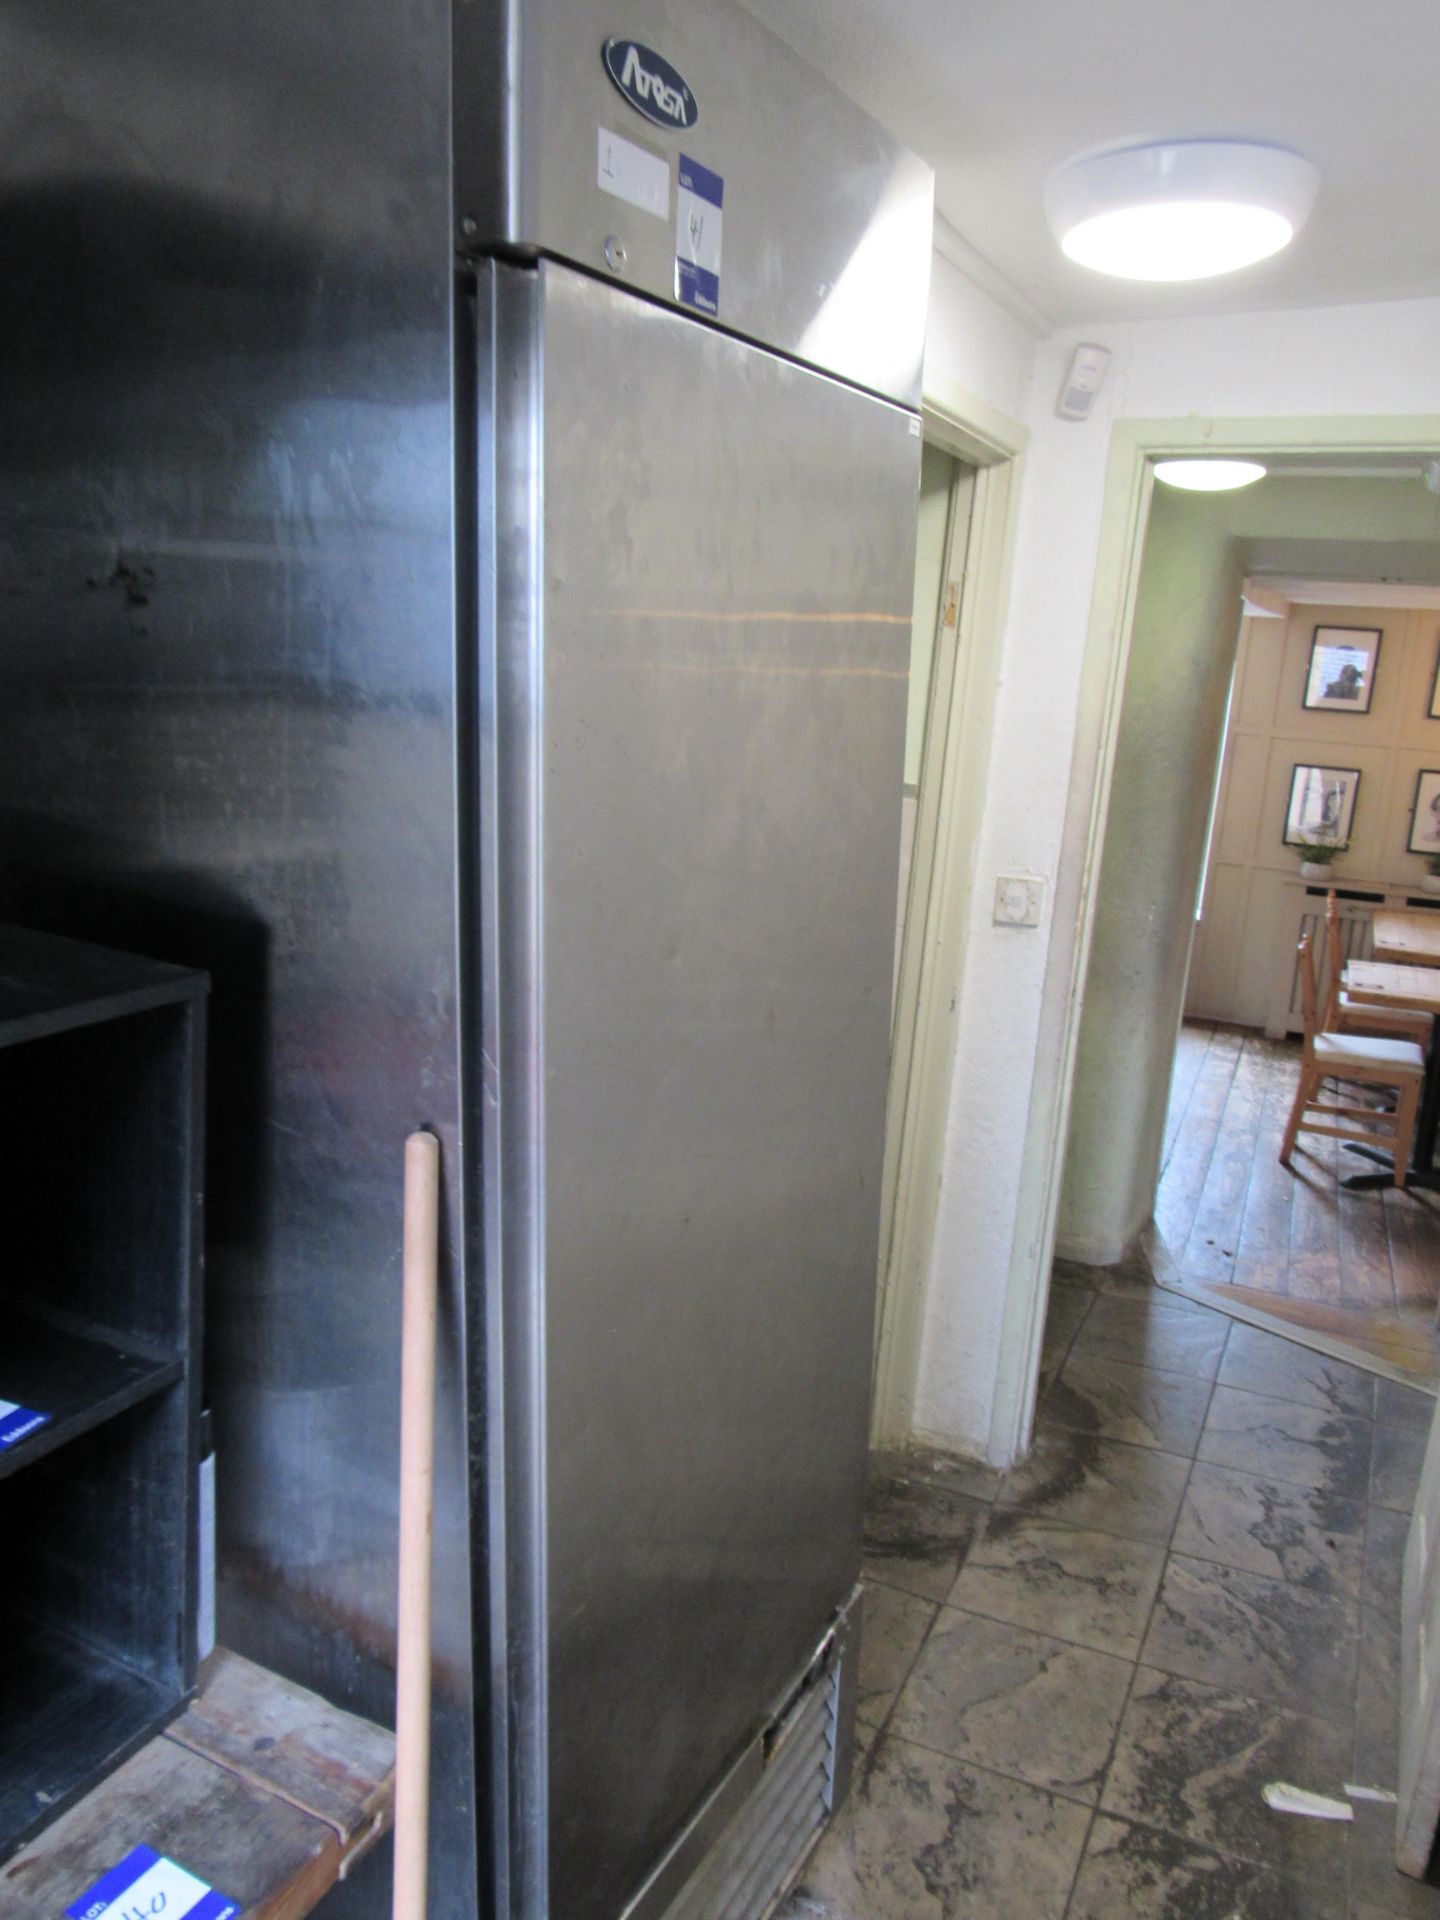 Atosa stainless steel fridge